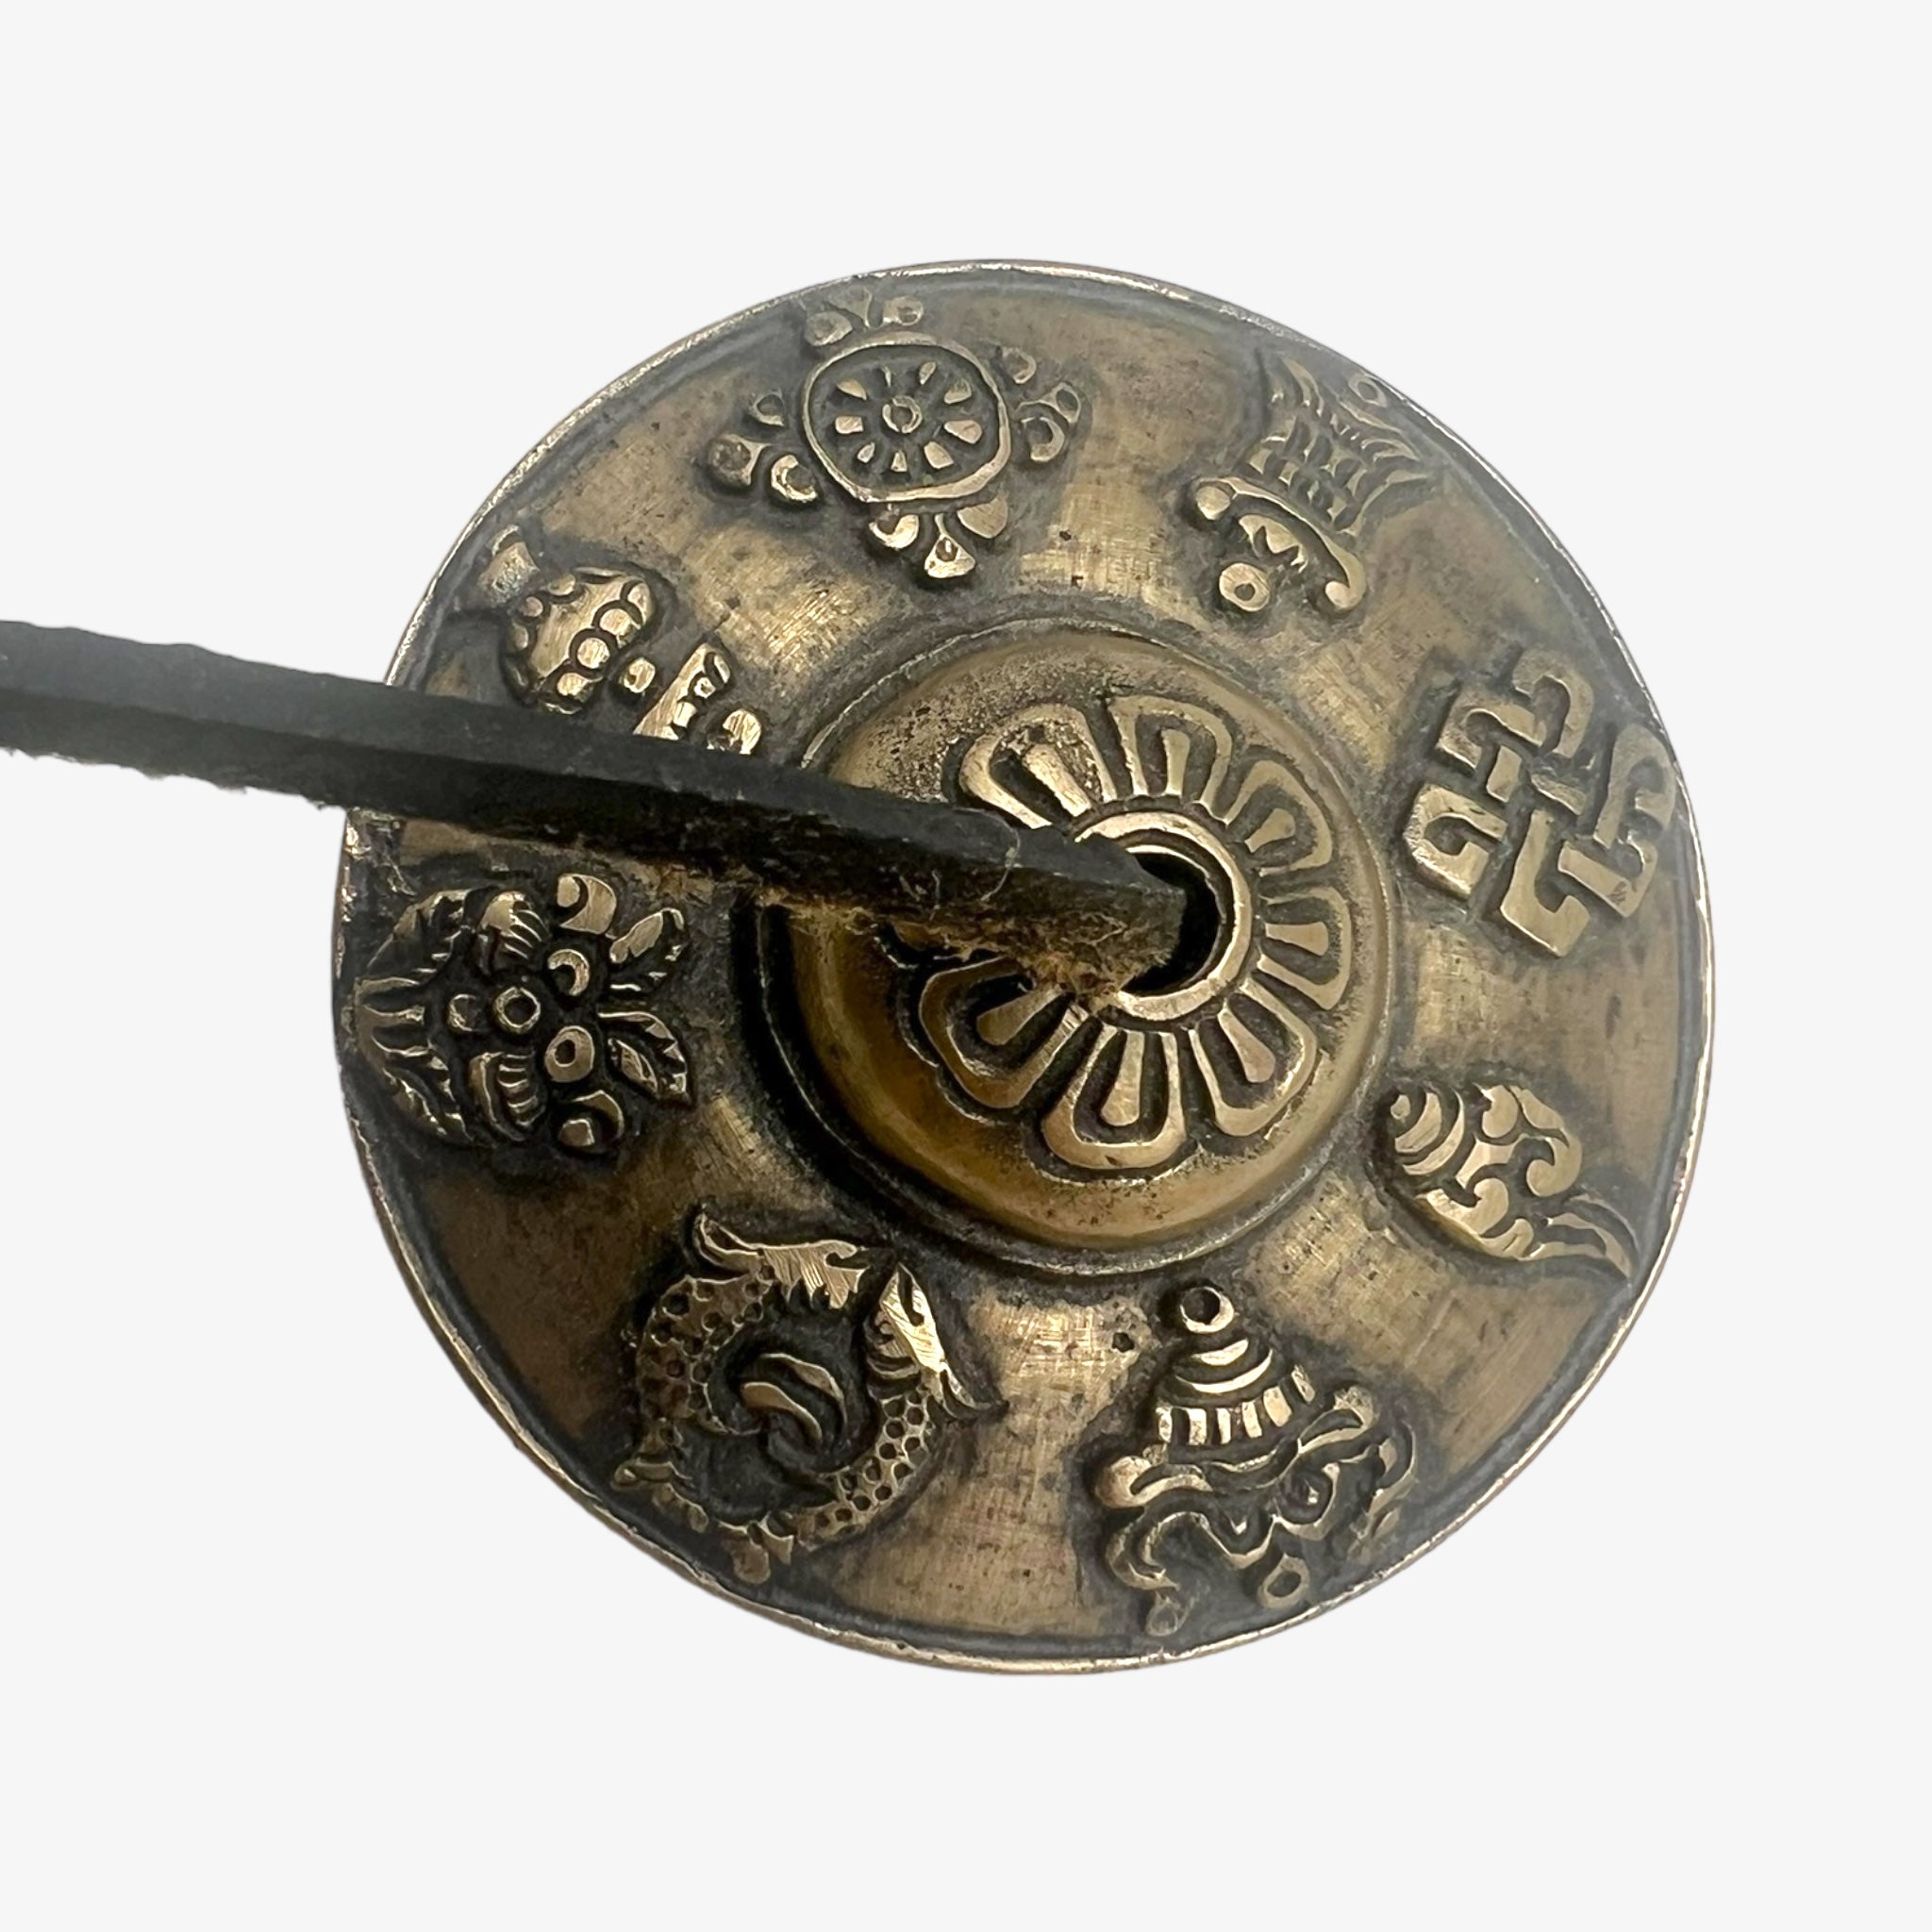 Vintage Tibetan Bronze Tingsha Bells